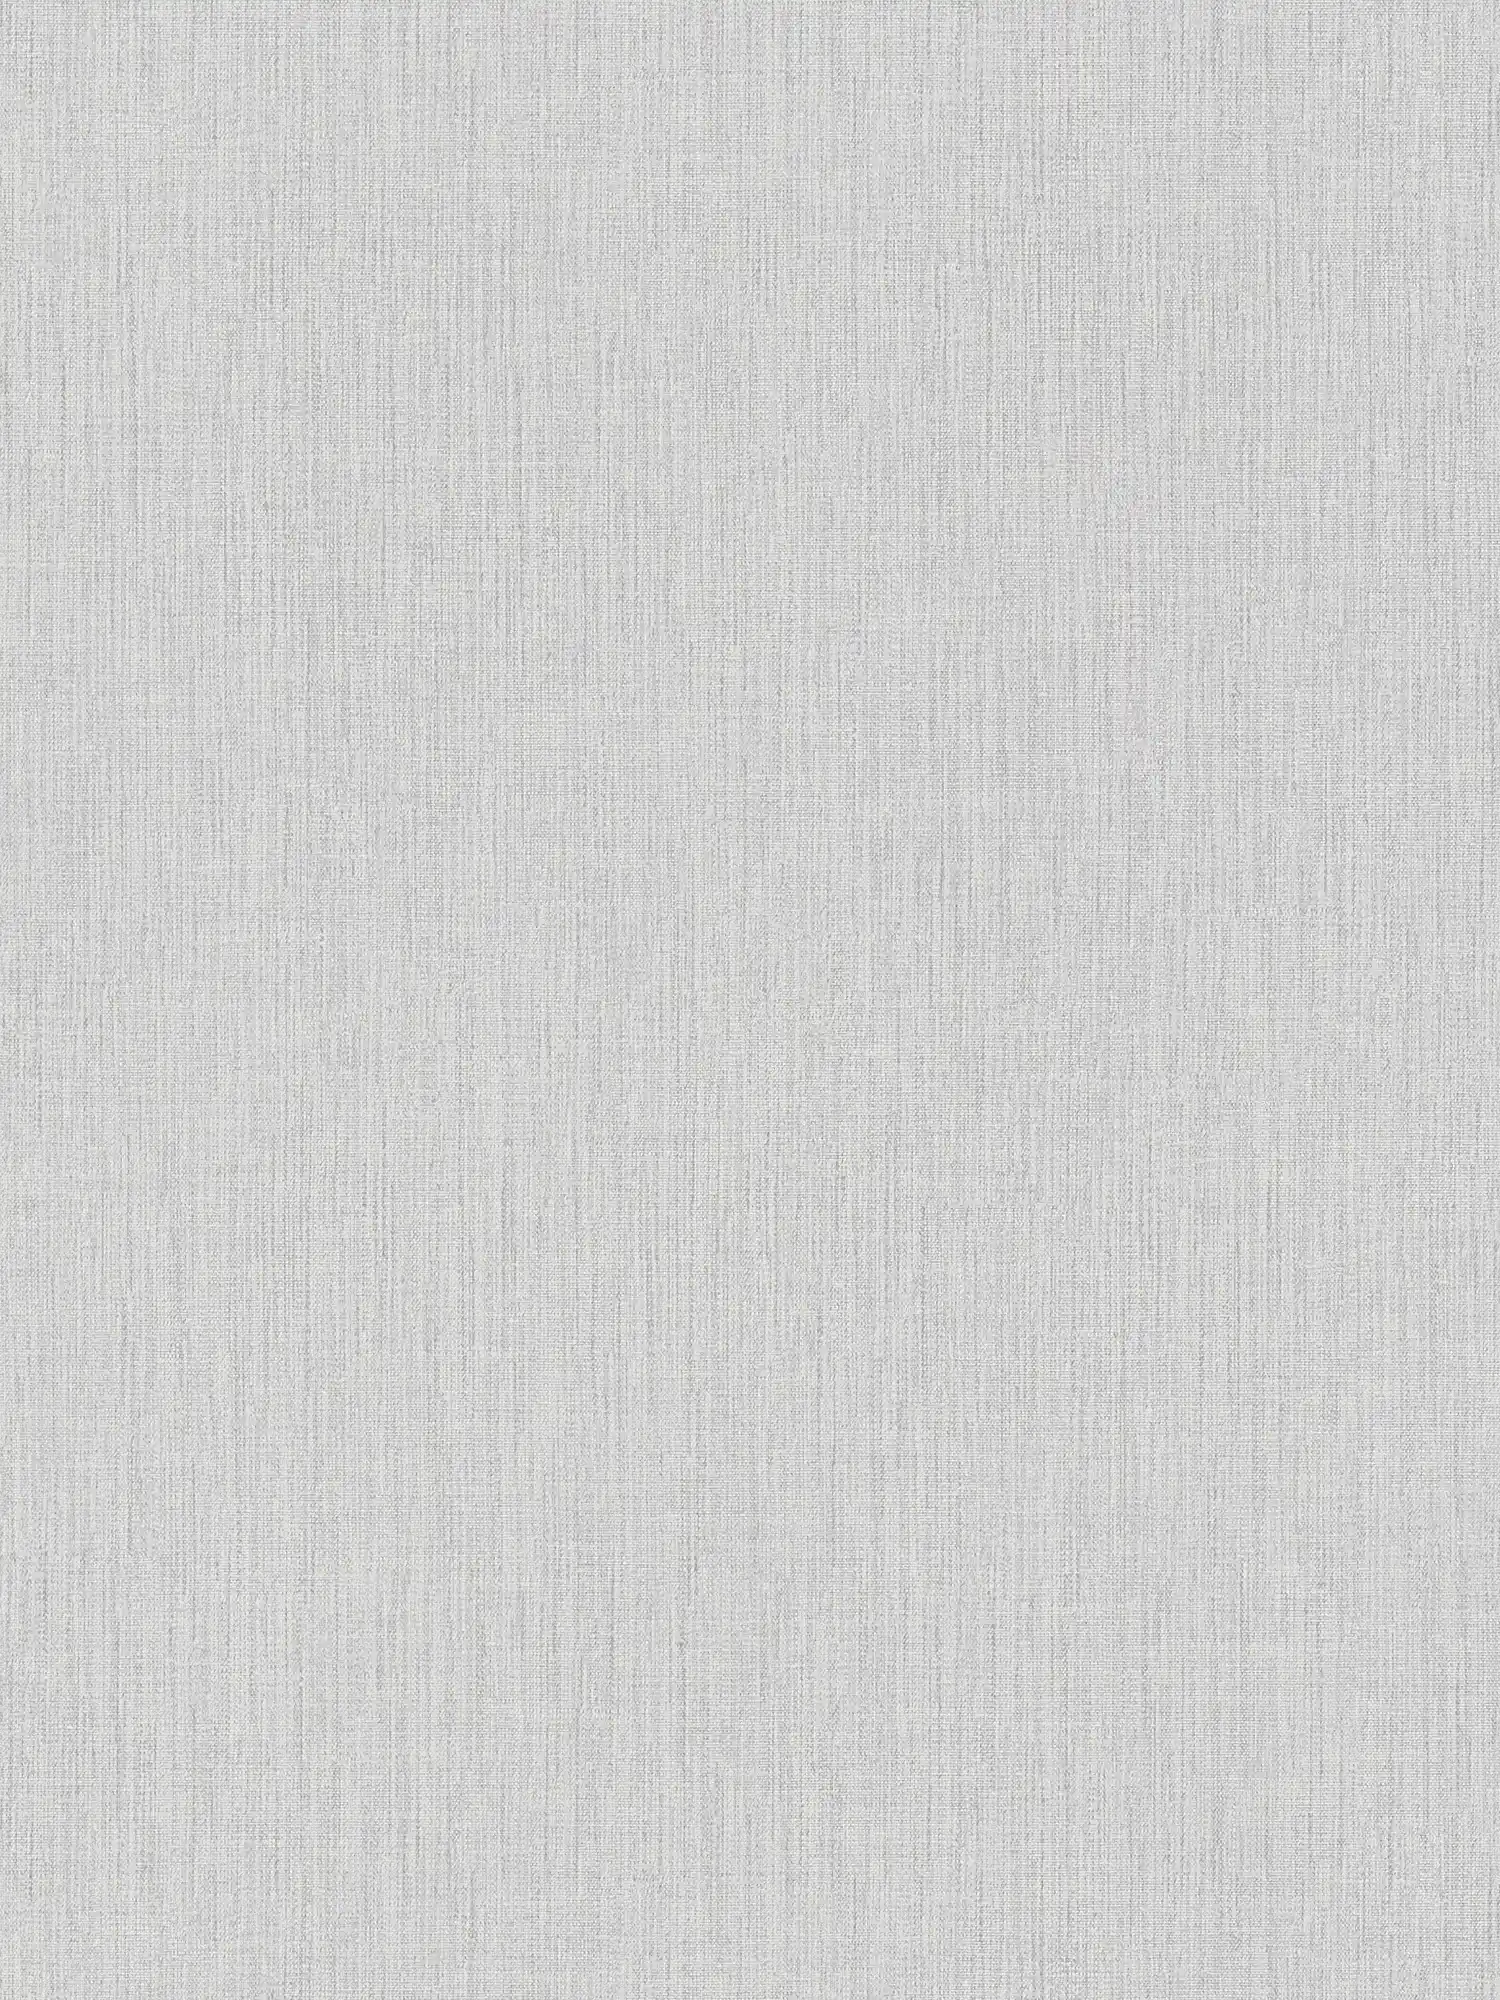 Carta da parati in tessuto non tessuto effetto lino con motivi tono su tono - rosa, grigio, bianco
